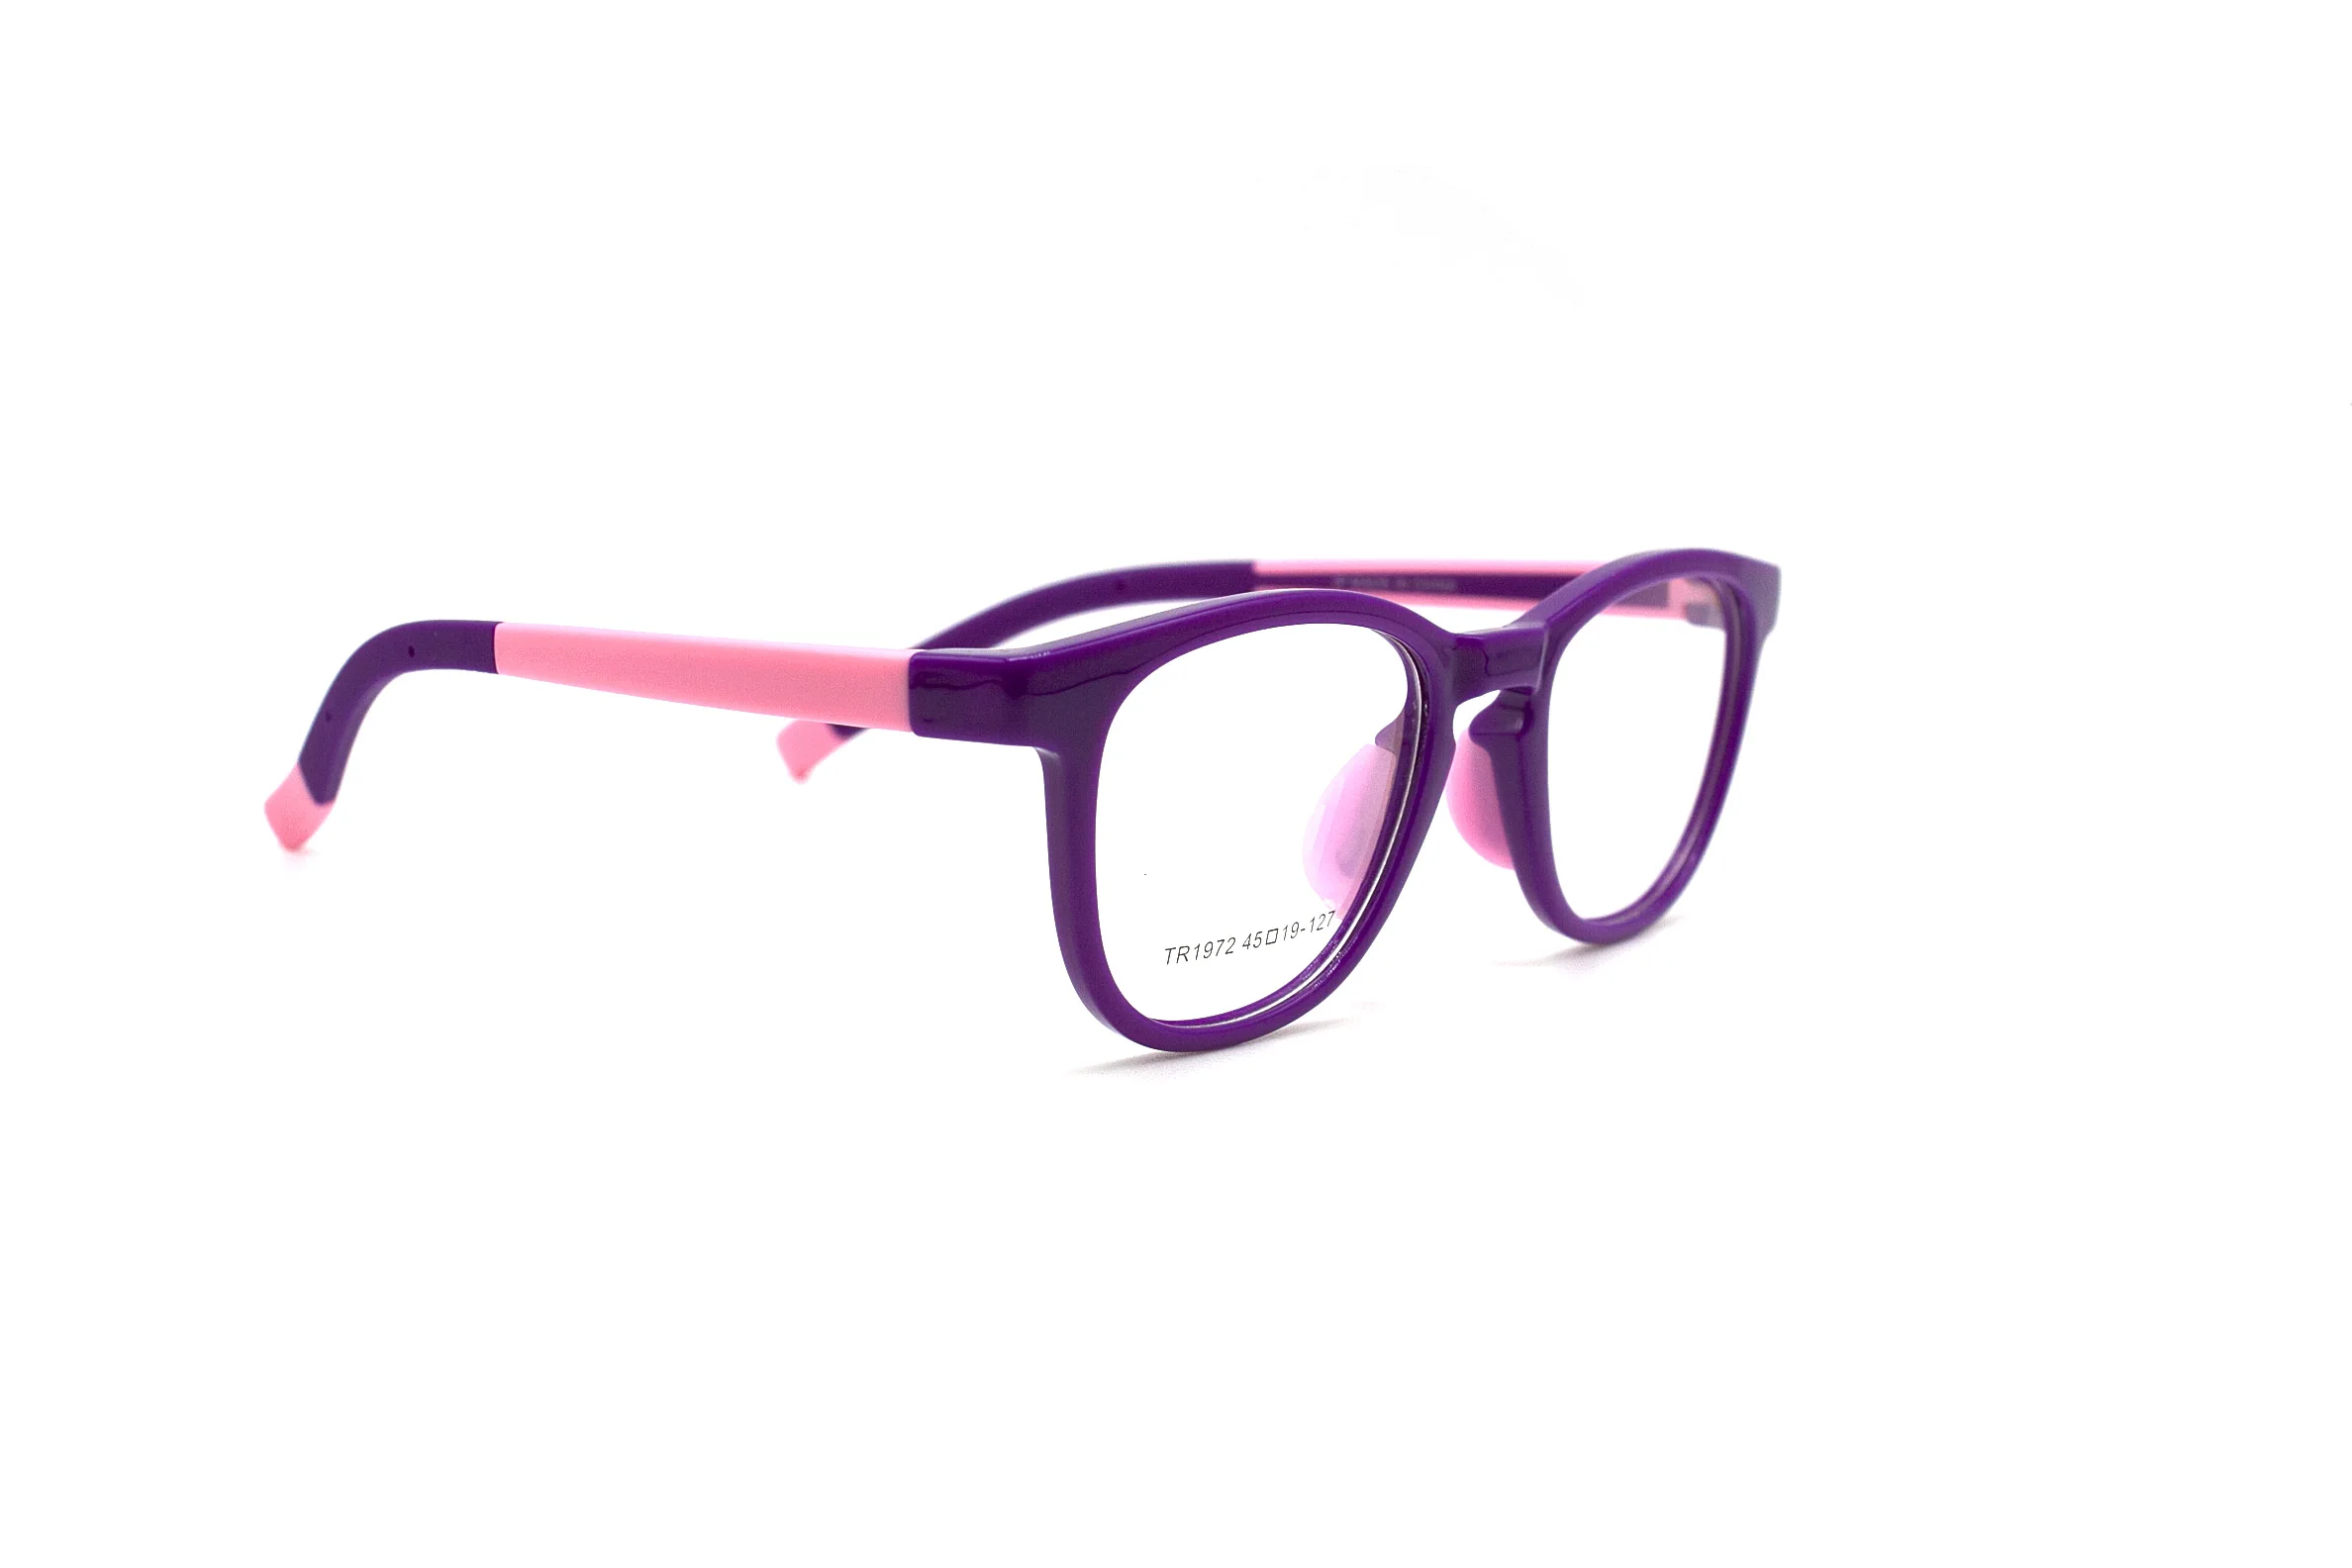 LuckTime милые детские очки оправа Мягкая TR90 рецептурная оптическая оправа детские оправы для очков счастливое время близорукость очки оправа#1972 - Цвет оправы: Purple